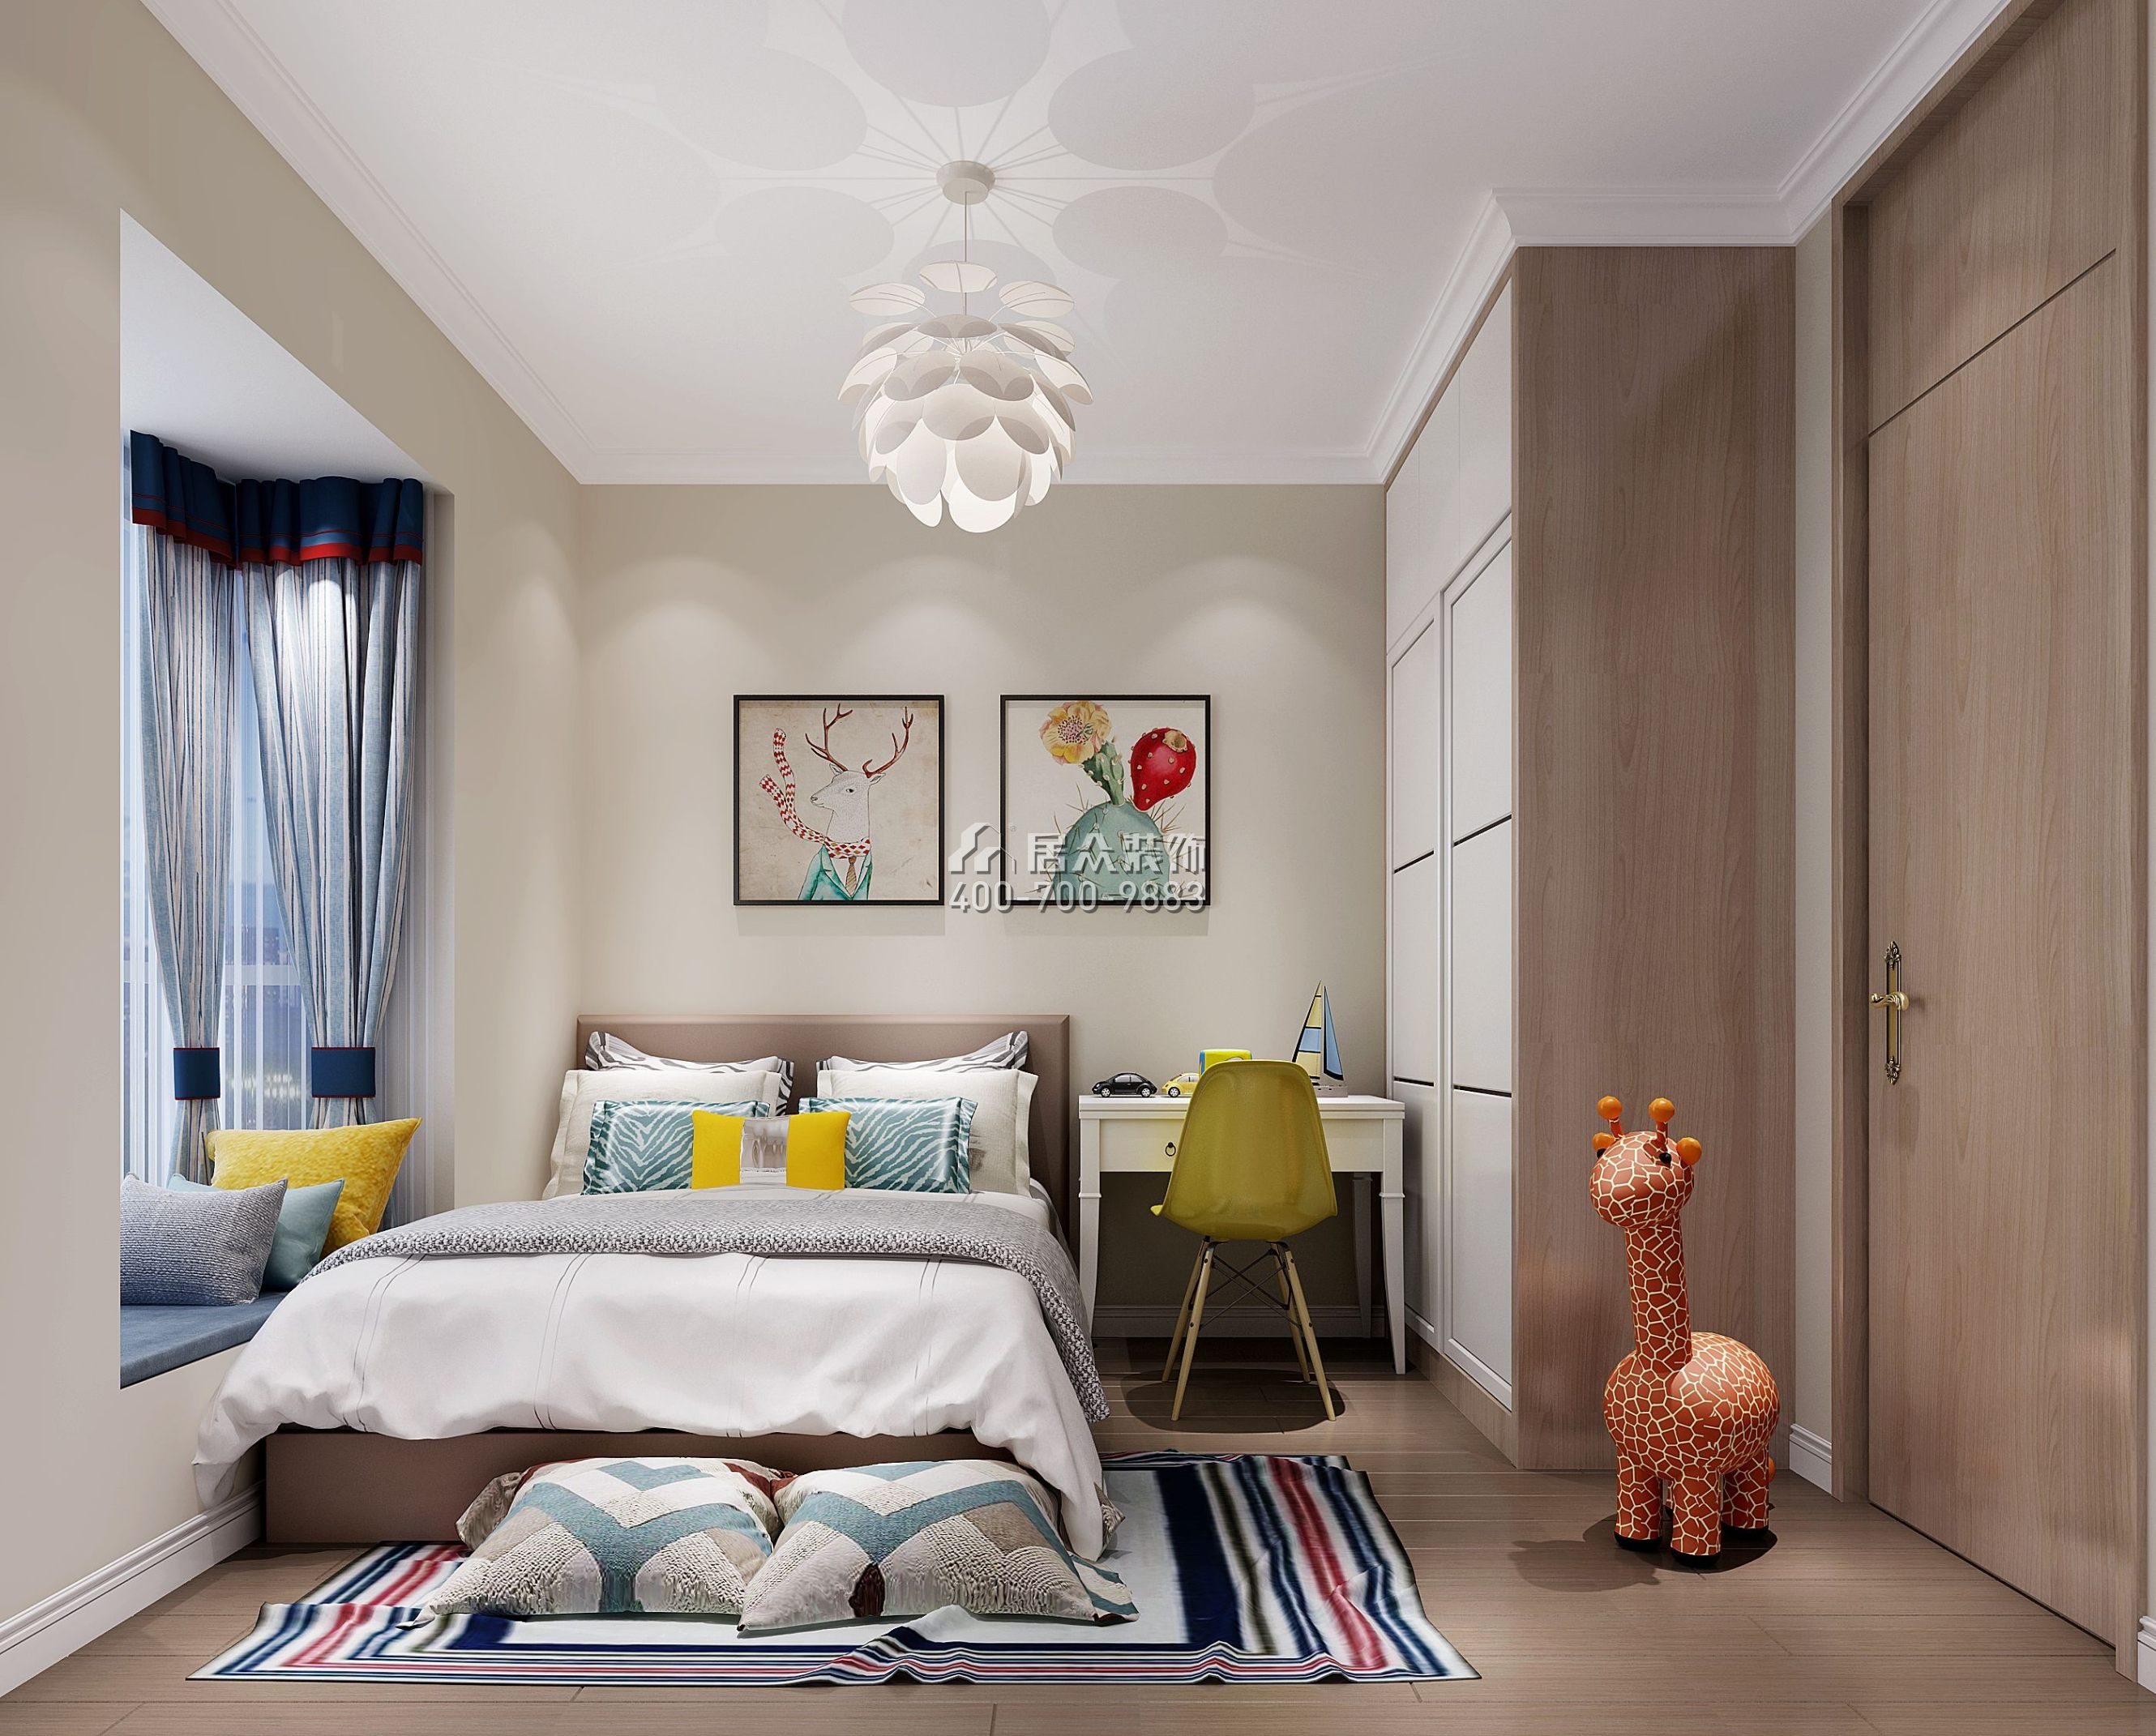 梧桐花园98平方米现代简约风格平层户型卧室装修效果图